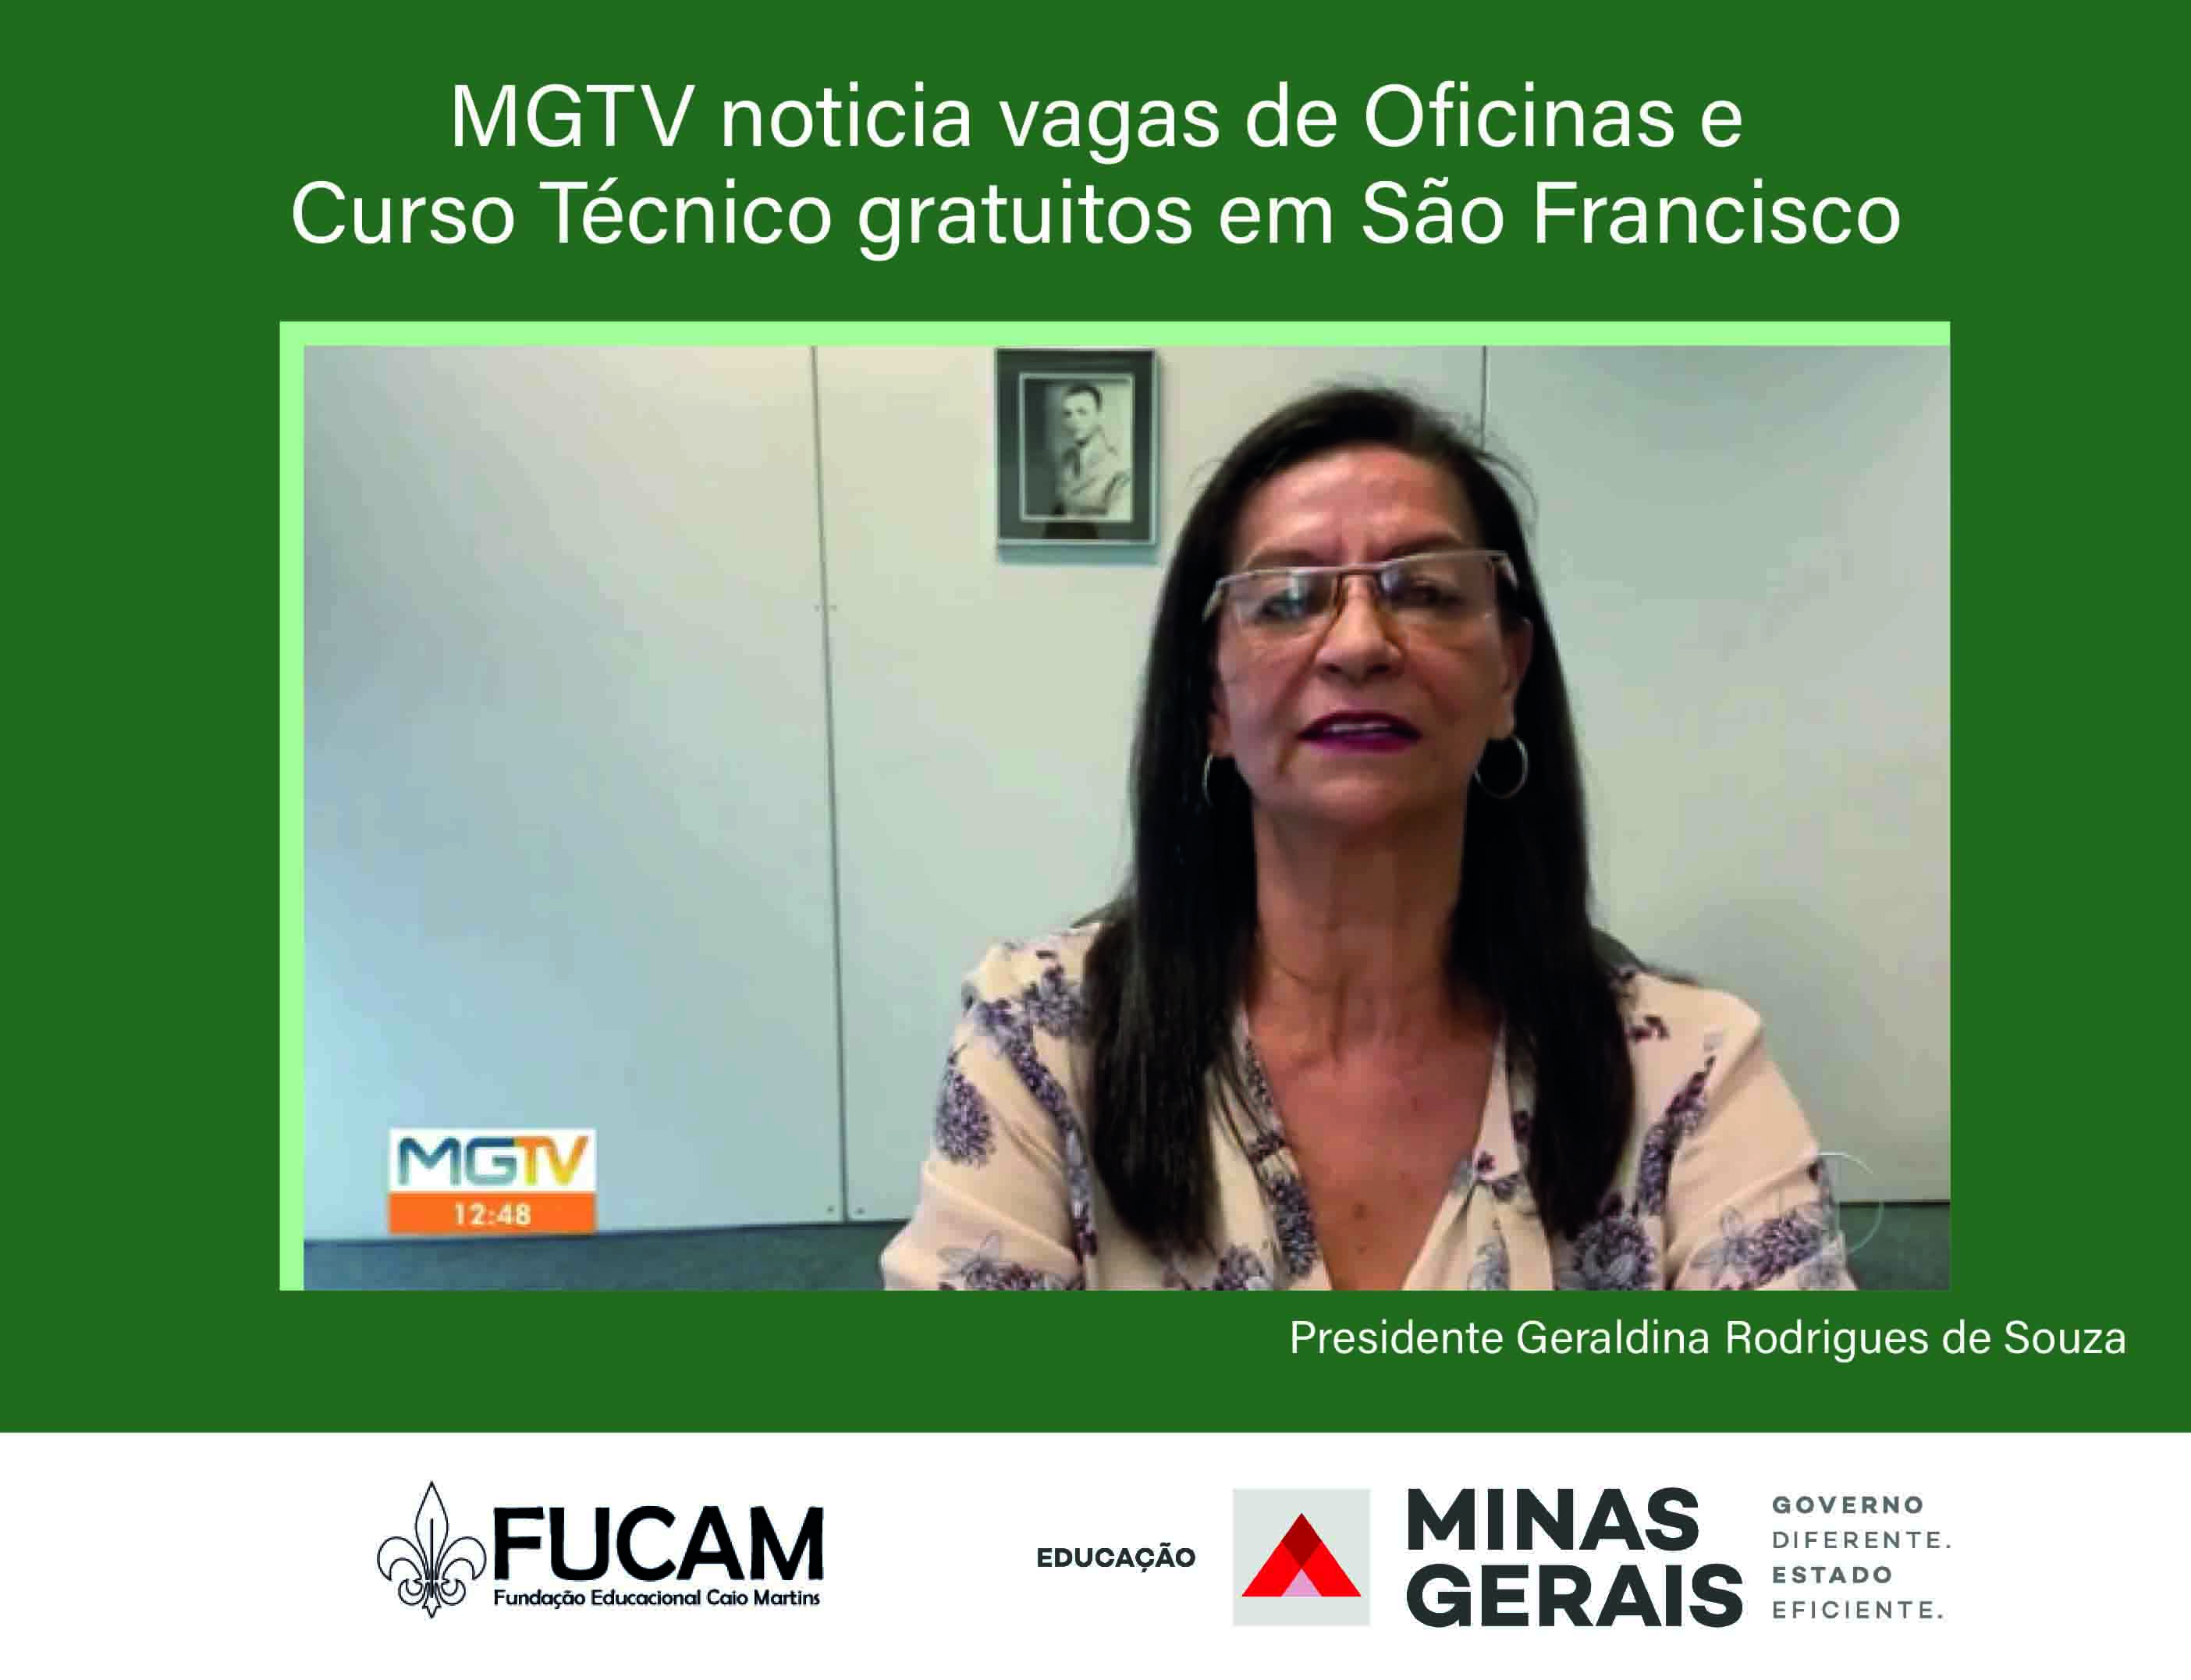 MGTV noticia vagas de Oficinas e Curso técnico gratuitos em São Francisco